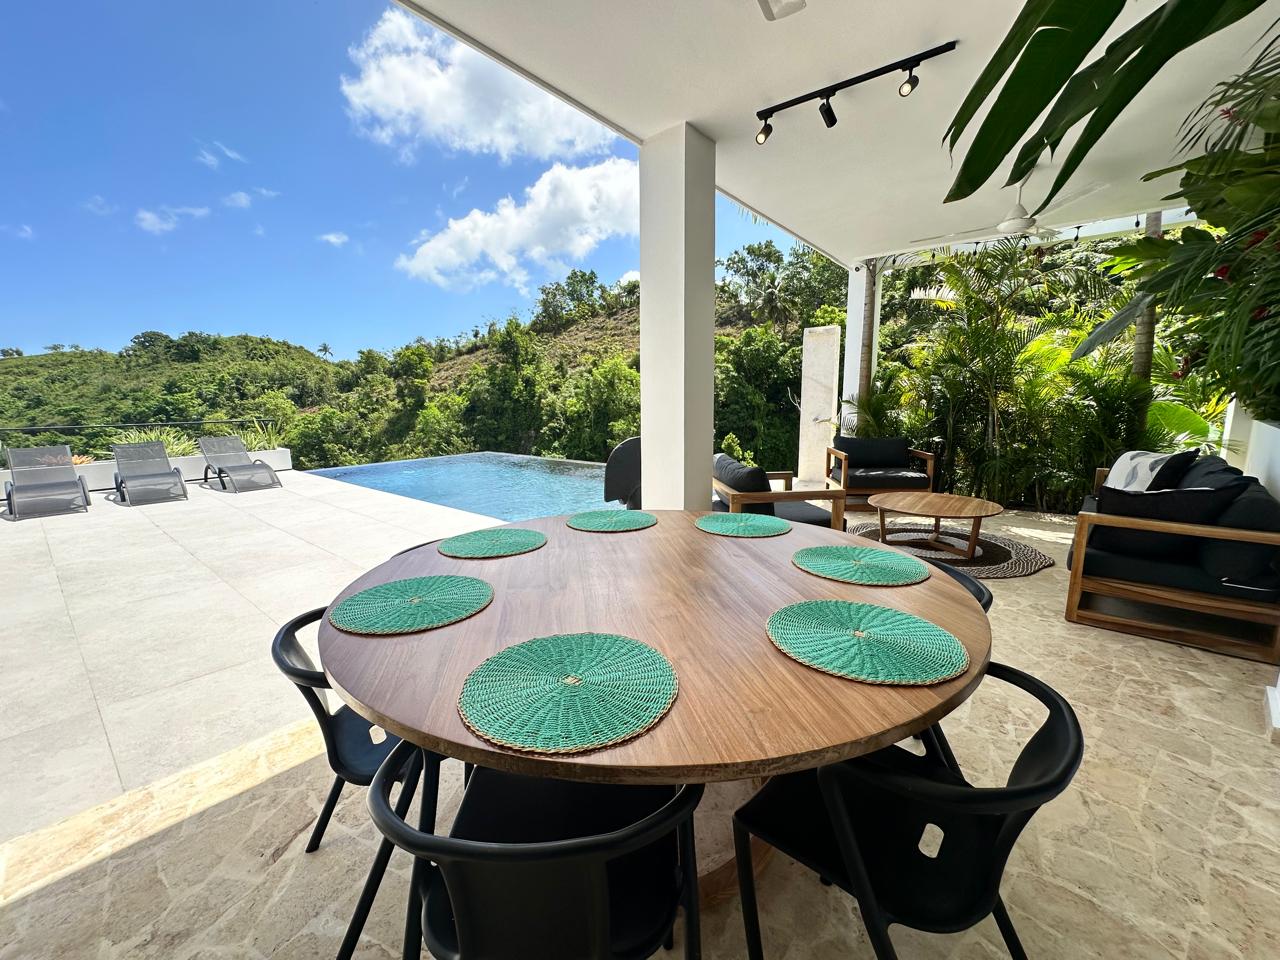 Splendid 4-bedroom villa with ocean vista - Las Terrenas Real Estate - Ocean Edge Dominican Republic (1)